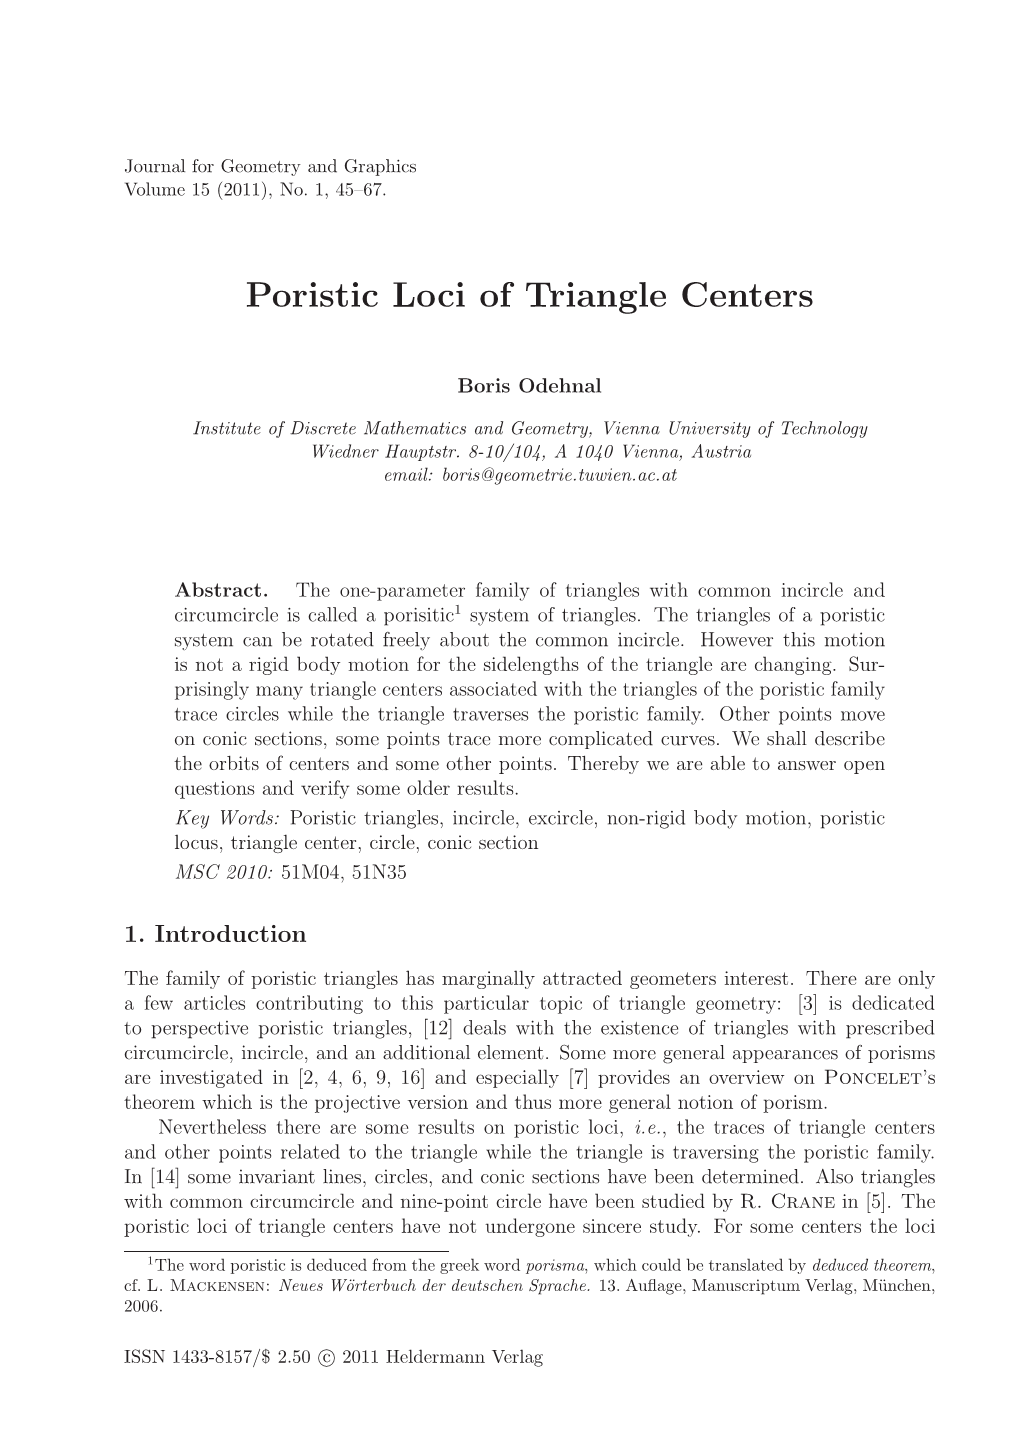 Poristic Loci of Triangle Centers